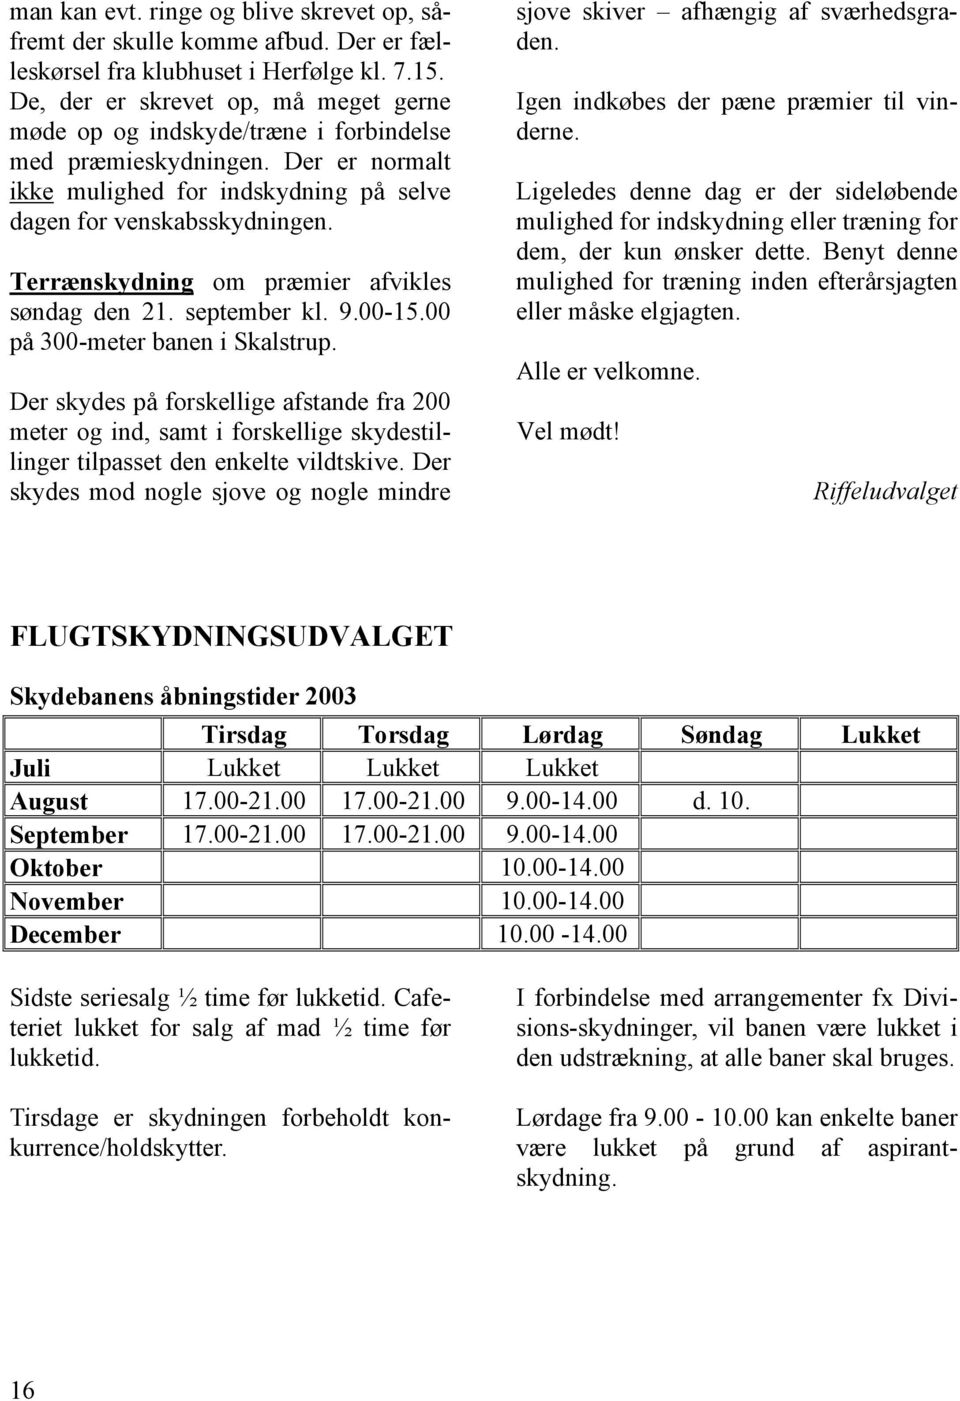 Terrænskydning om præmier afvikles søndag den 21. september kl. 9.00-15.00 på 300-meter banen i Skalstrup.